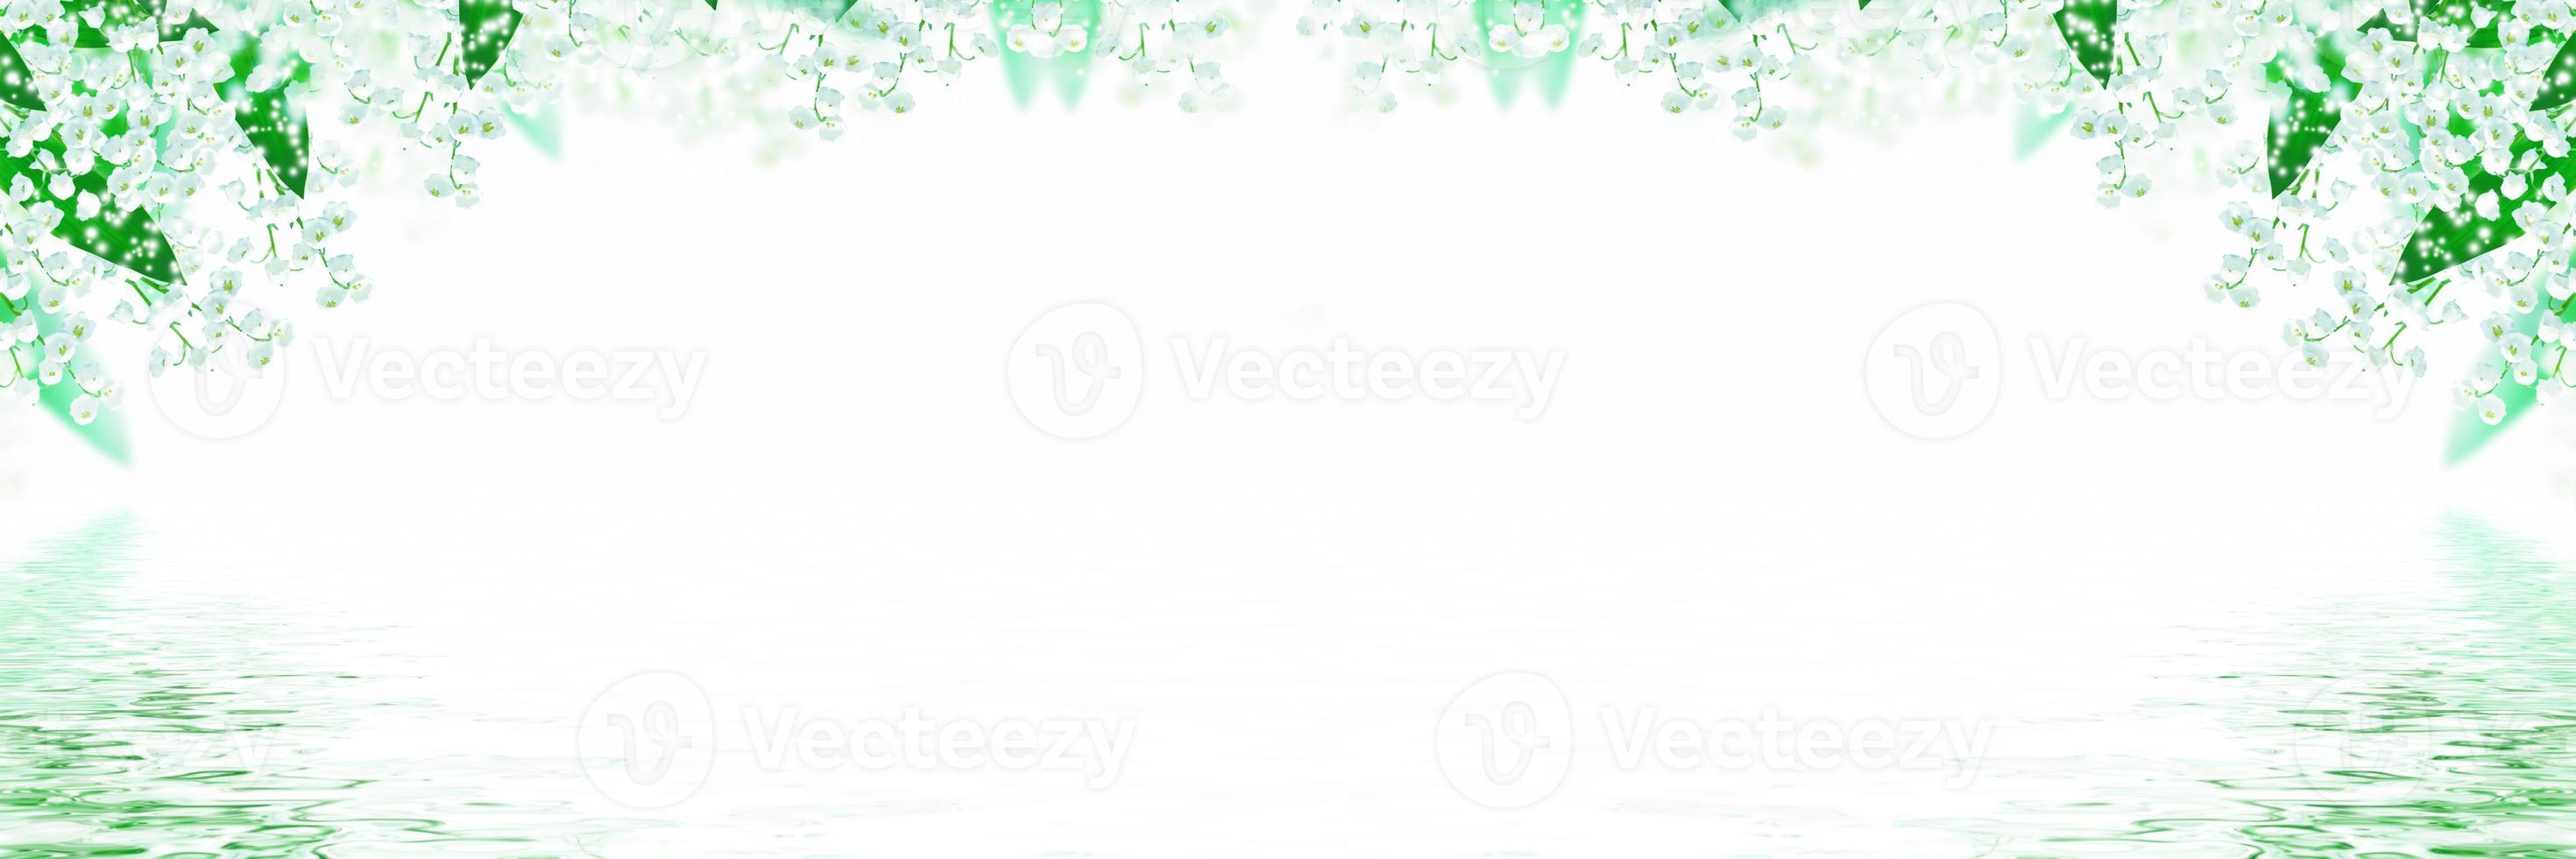 liljekonvalj blomma på vit bakgrund foto